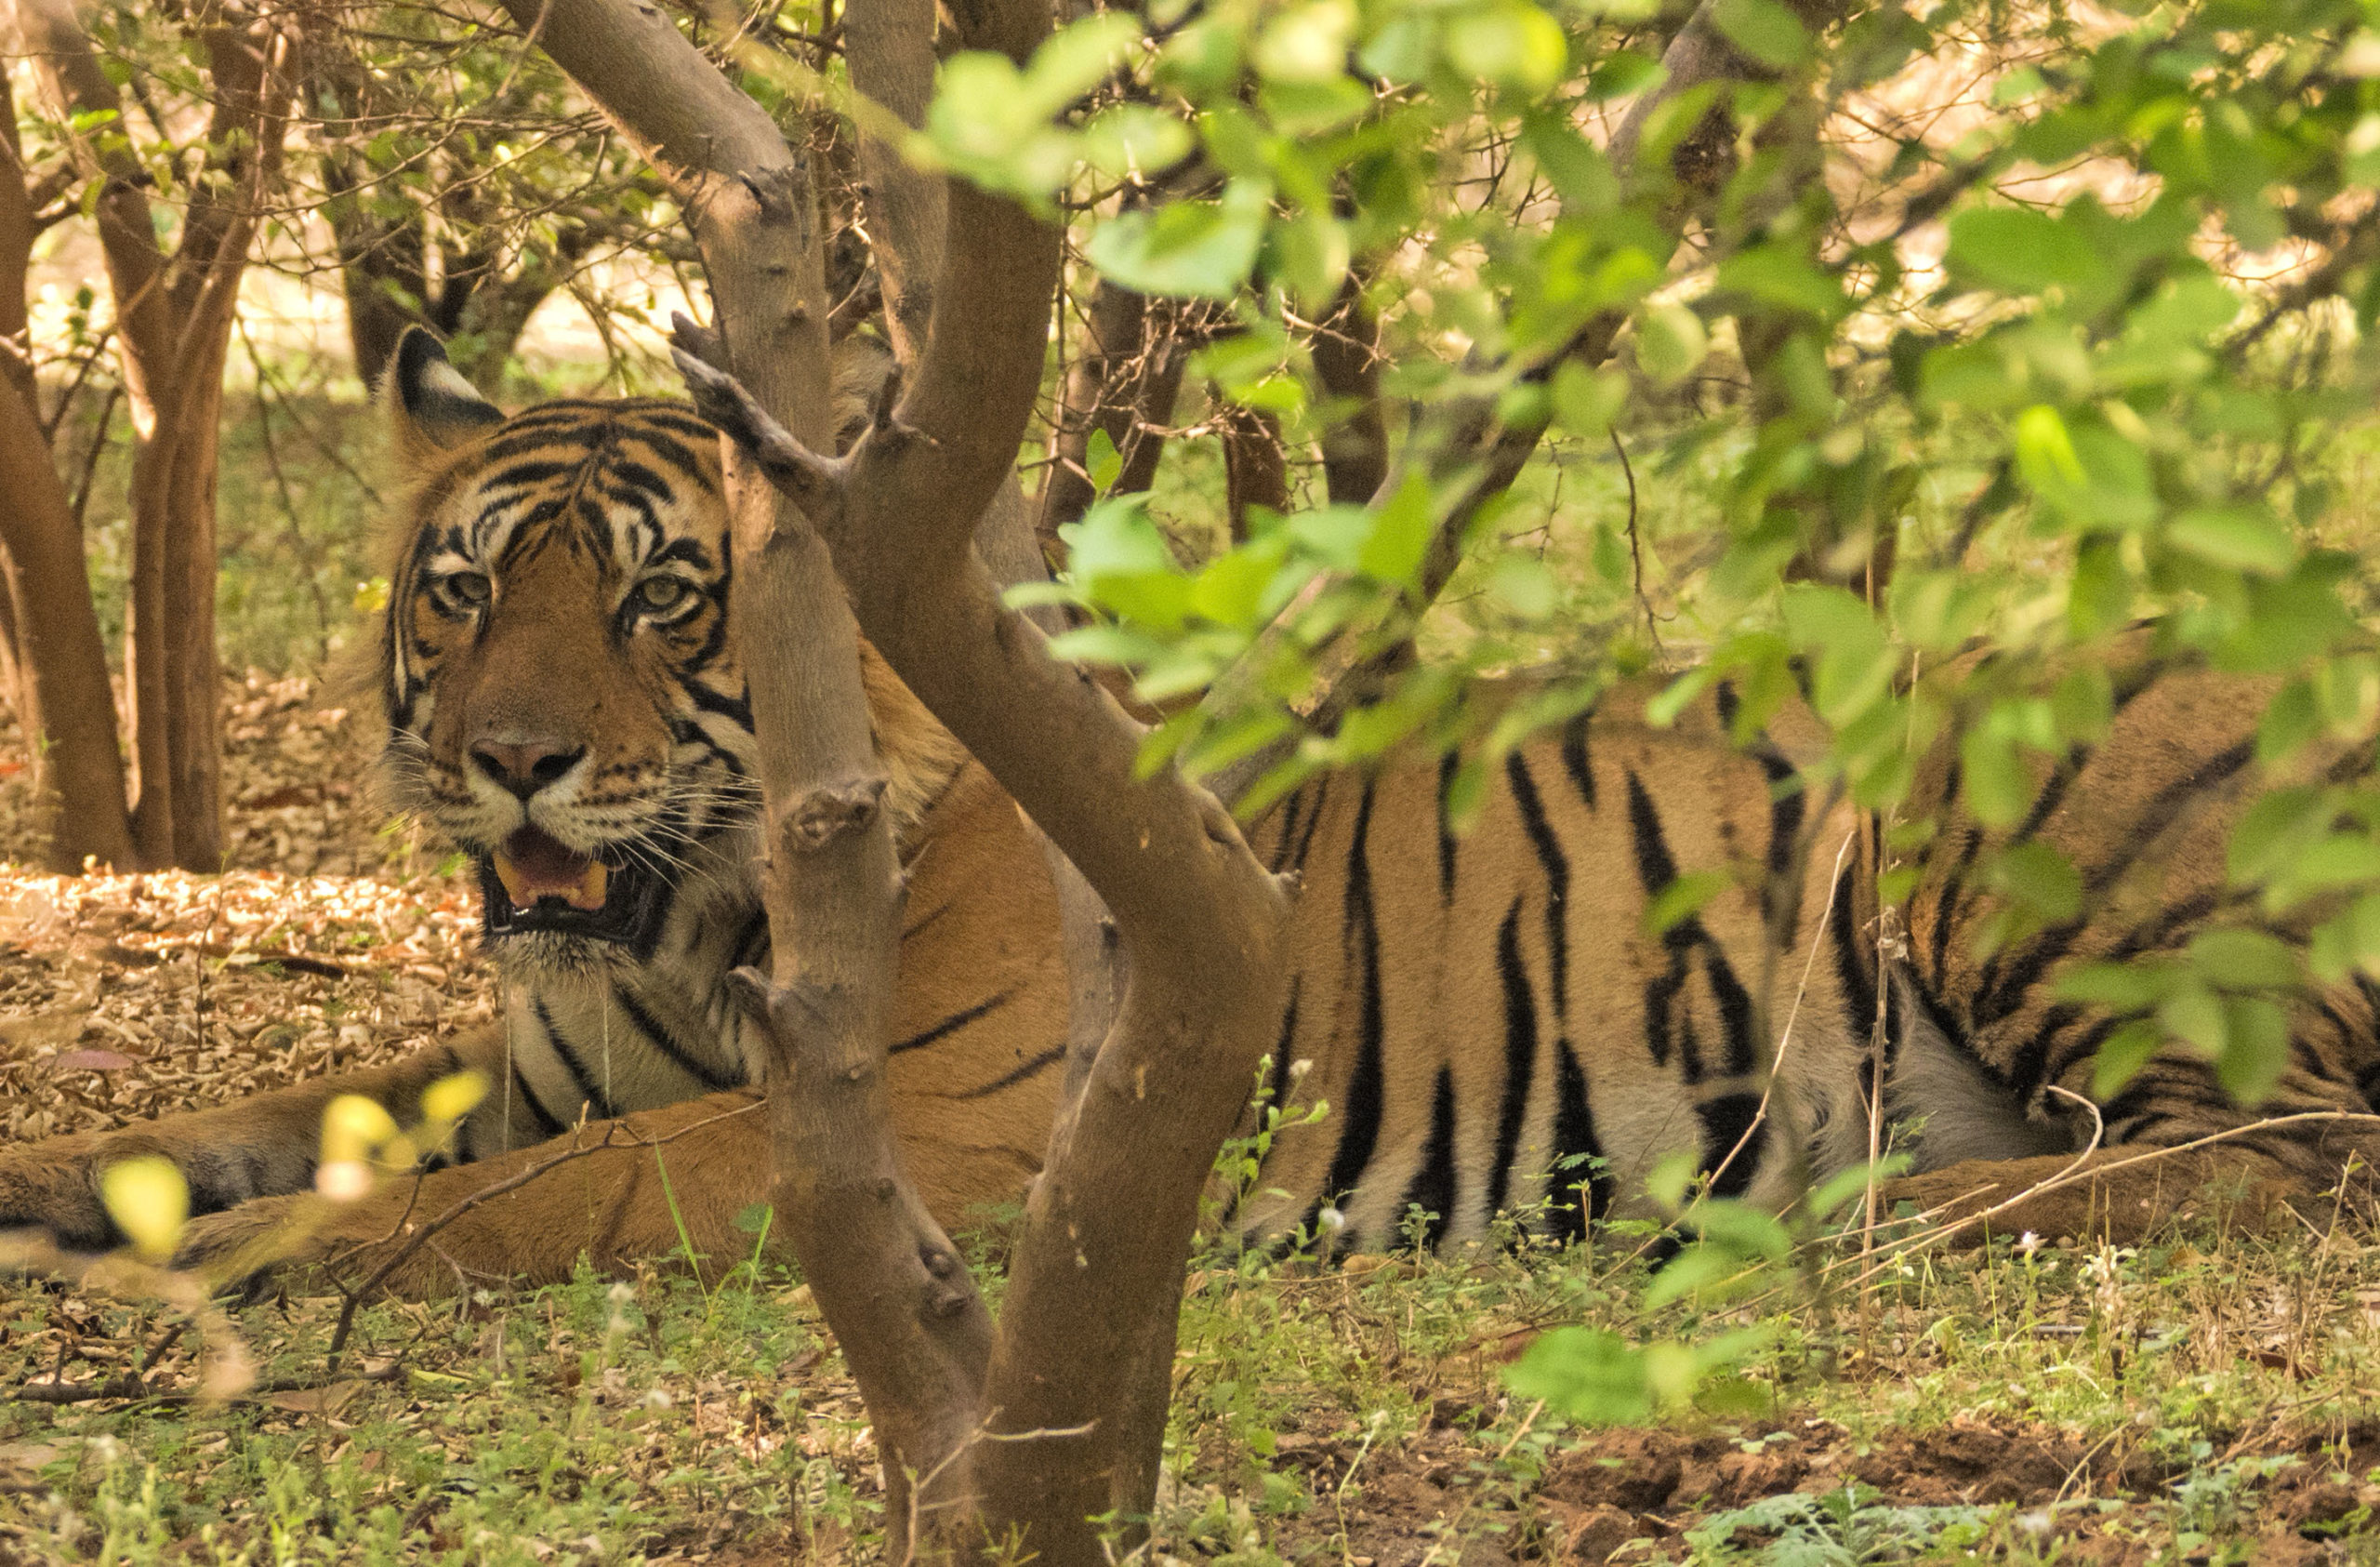 The Royal Animal captured by Aditya at ranthambore tiger reserve